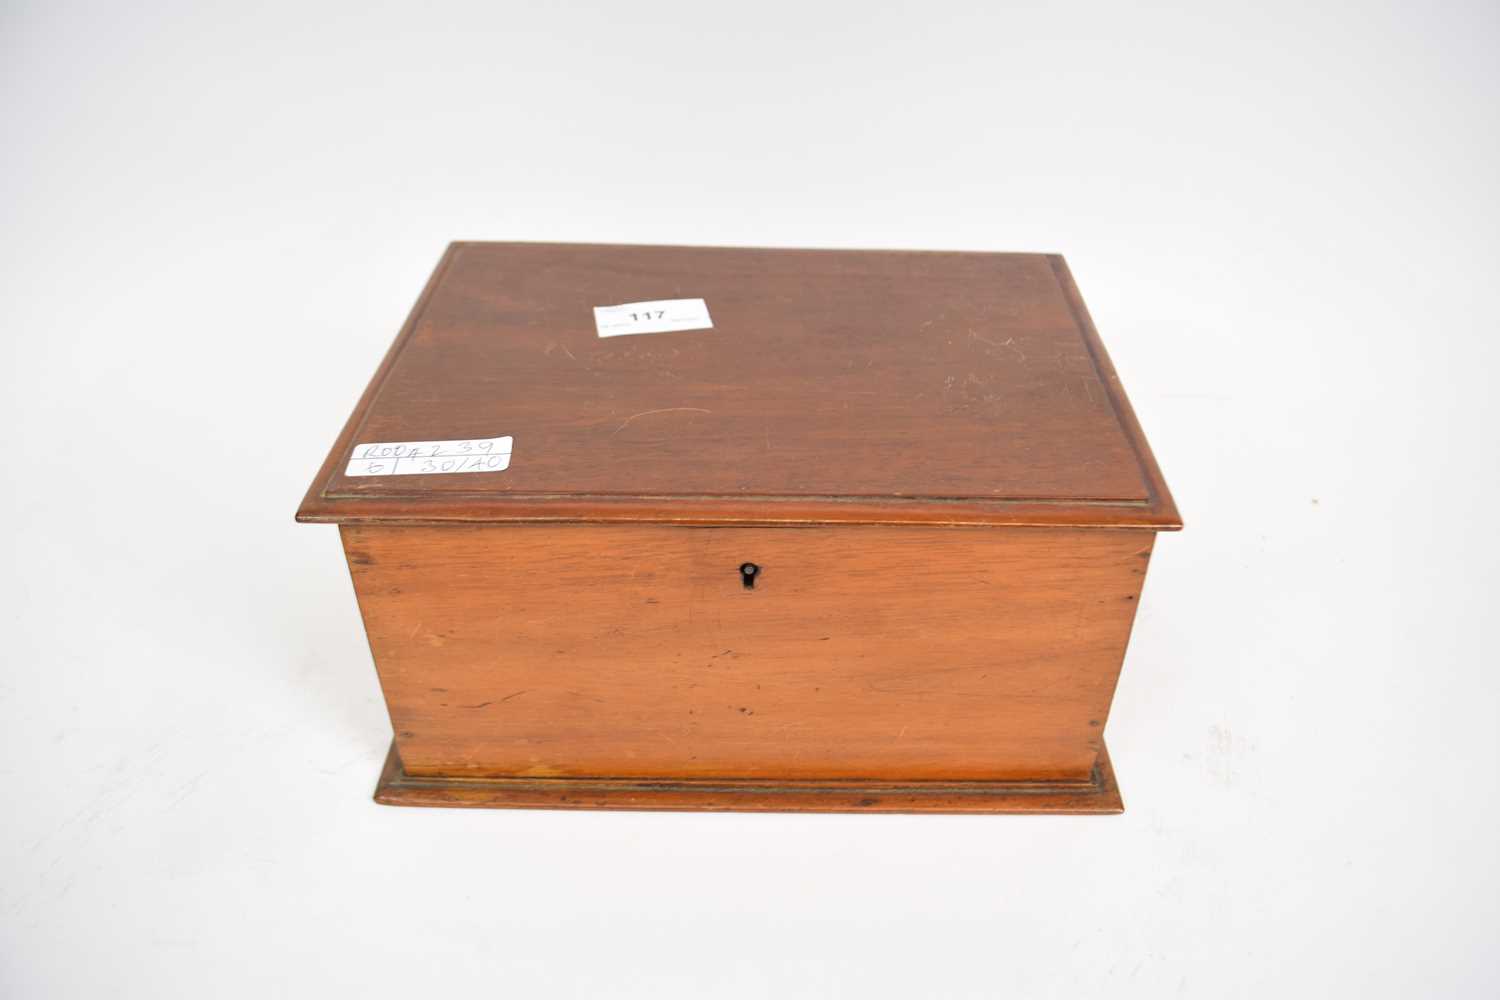 19th century mahogany jewellery box, 24cm long